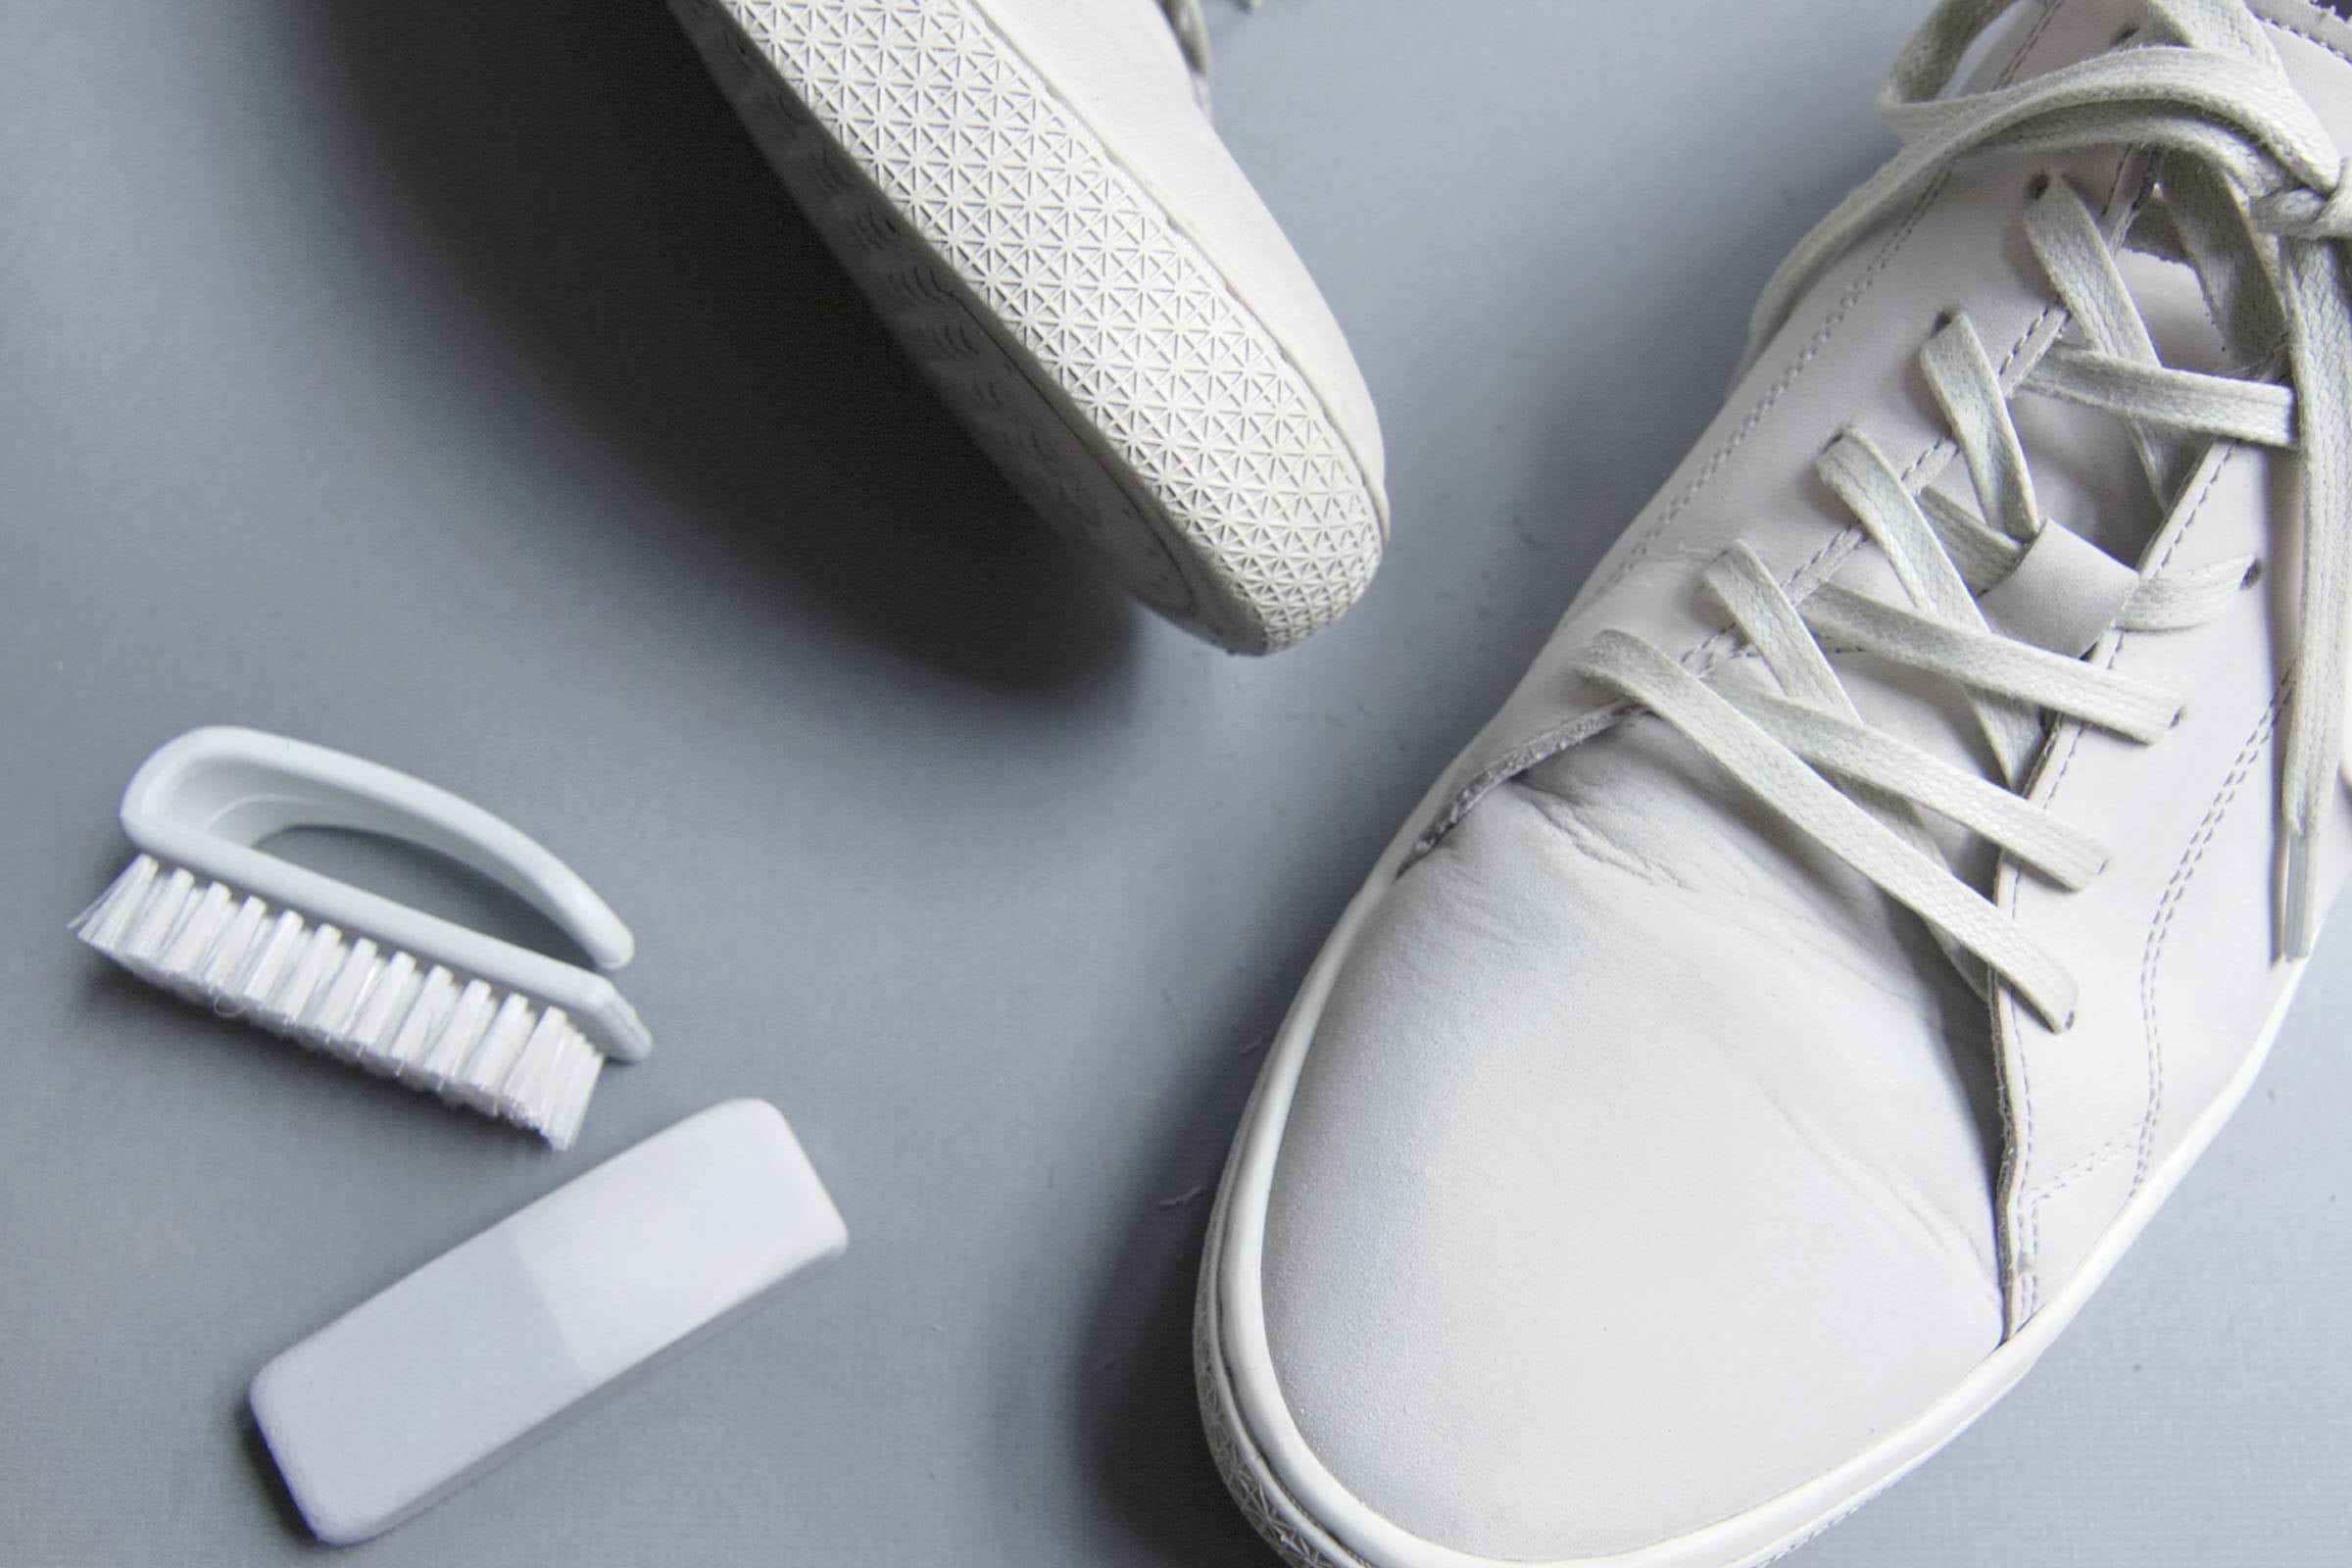 スニーカー 洗い方 ケア 方法 おすすめ how-to-clean-your-sneakers-wash-guide white